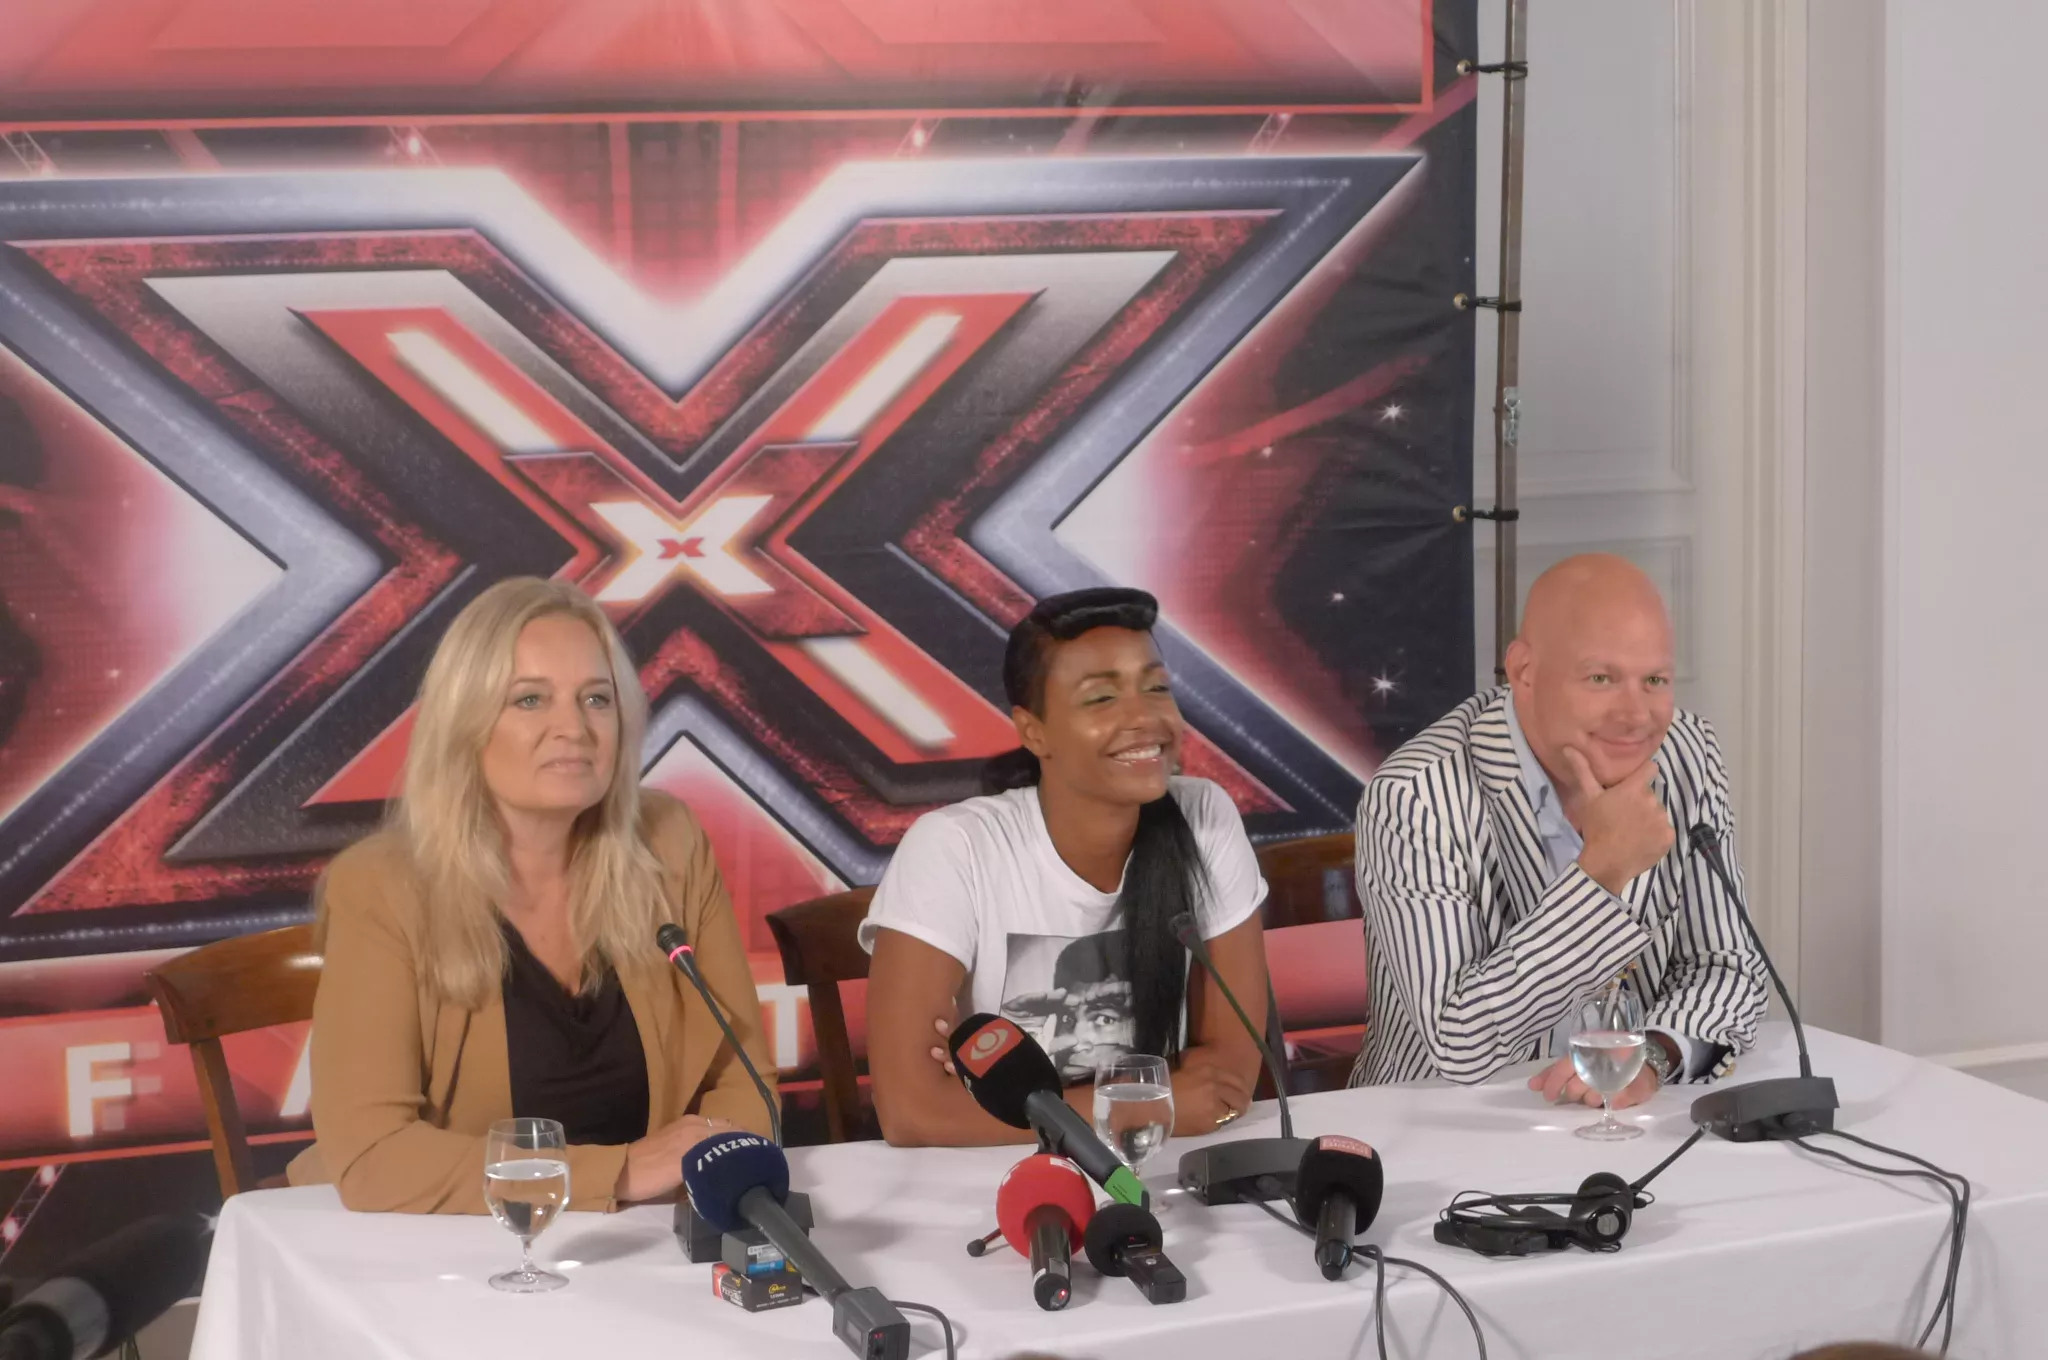 Hvad lytter X Factor-dommerne til privat? 